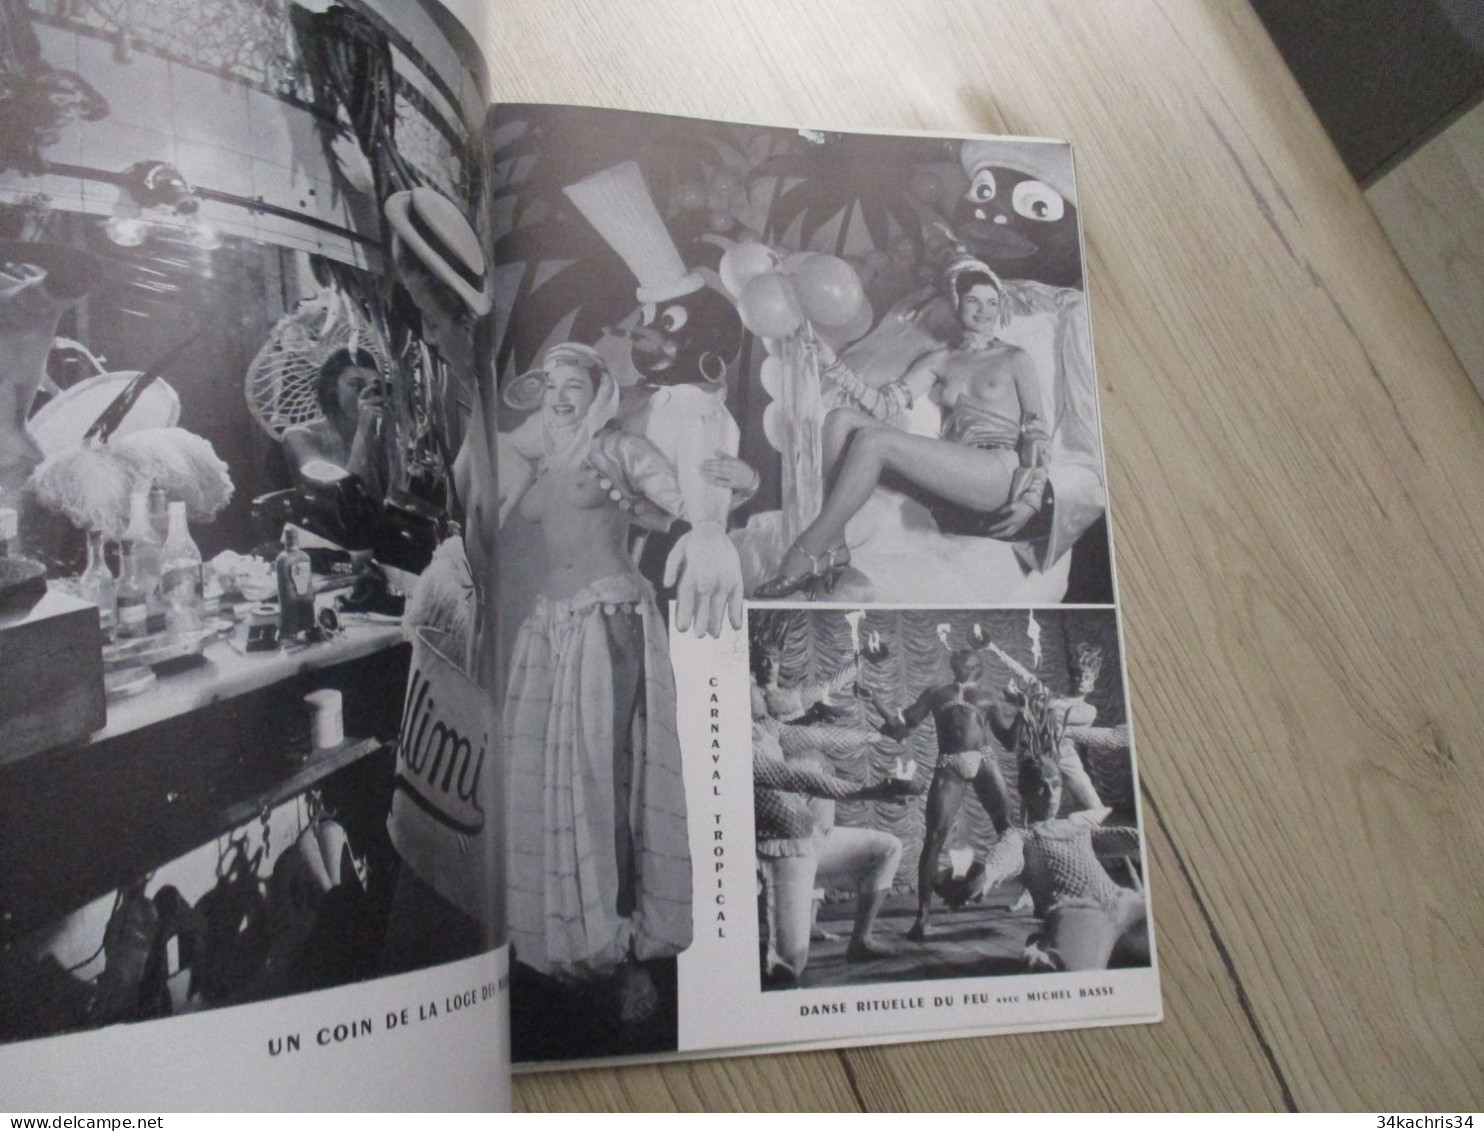 ST 35 Programme illustré avec texte pubs et photo dont nu nude Lido